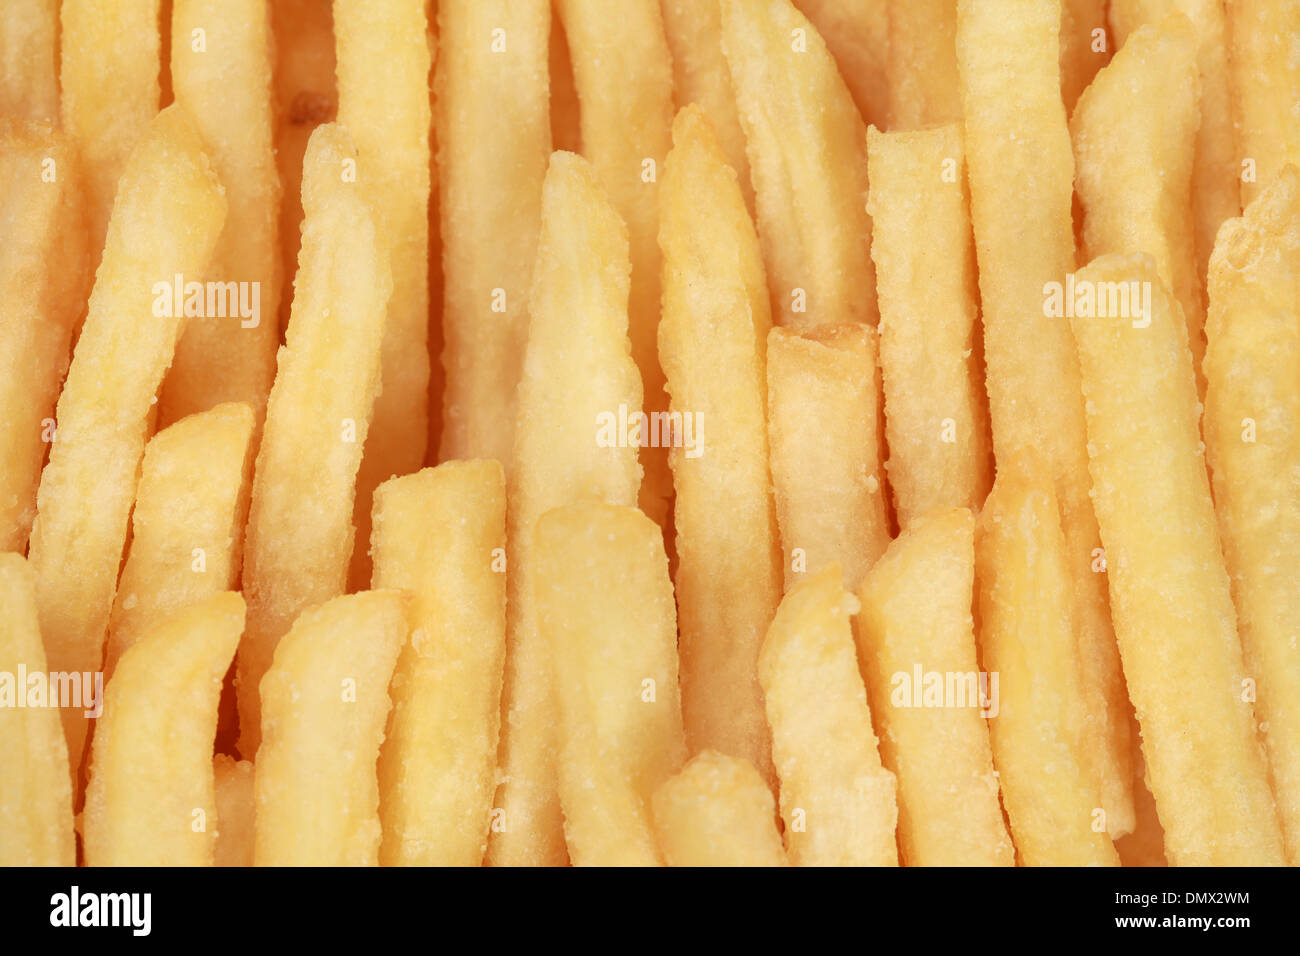 Patatas fritas formando un fondo de comida rápida Foto de stock